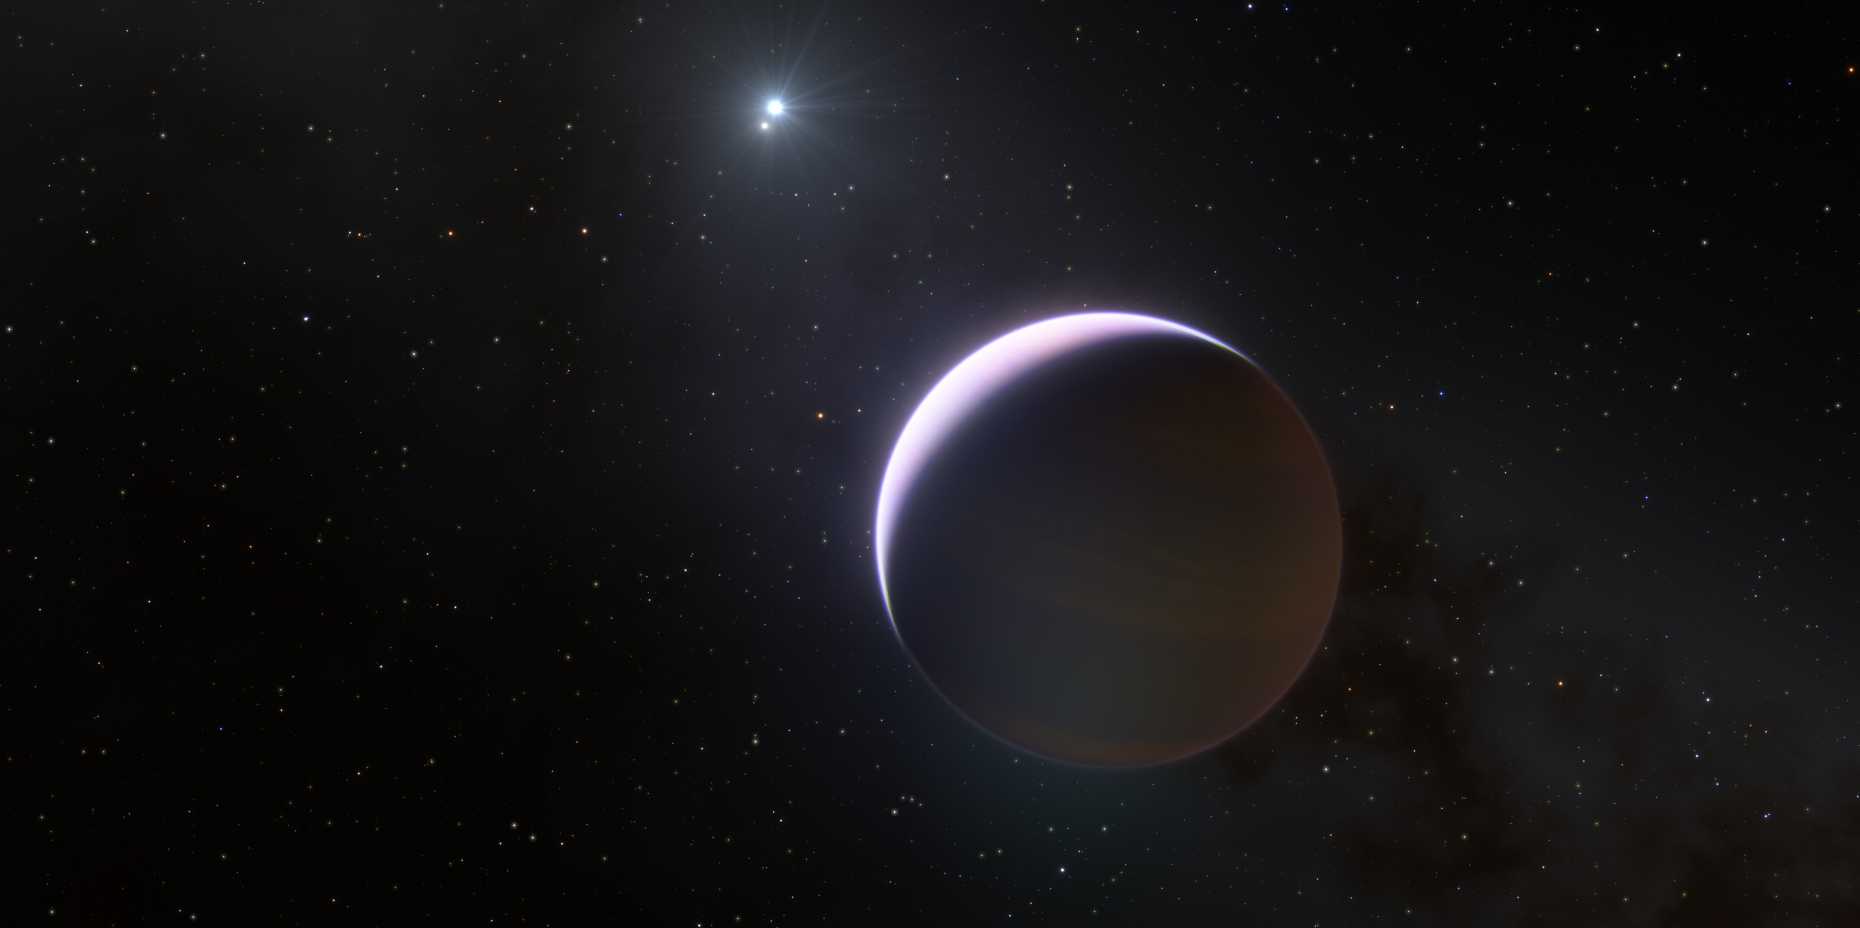 Diese künstlerische Darstellung zeigt den Planeten b Centauri b, der ein massives Doppelsternsystem umkreist. (Illustratiion: ESO/L. Calçada)